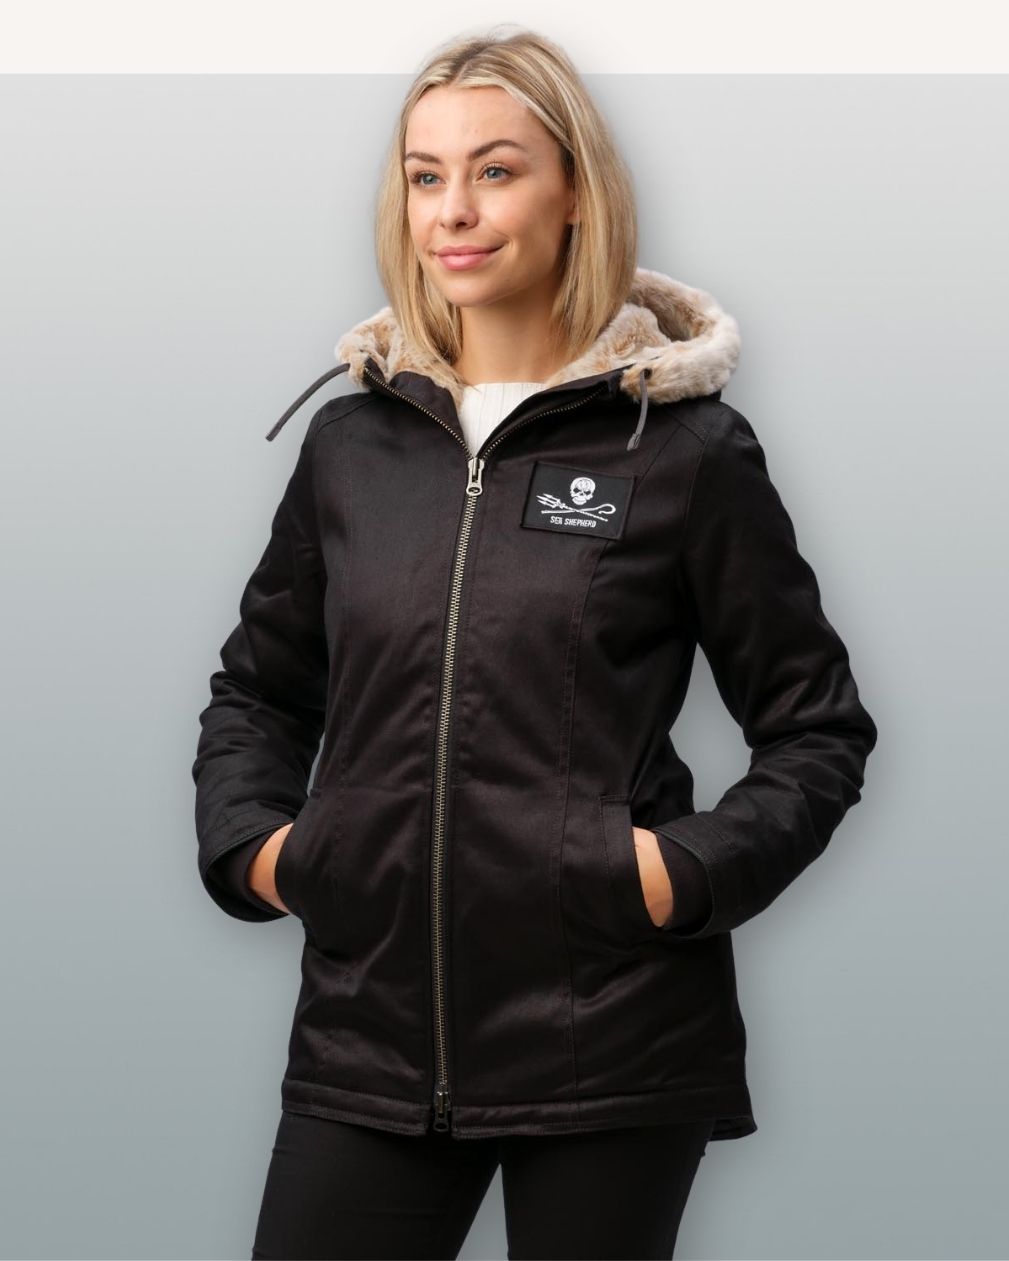 Freshemp™ Originals x Sea Shepherd Women's Jacket